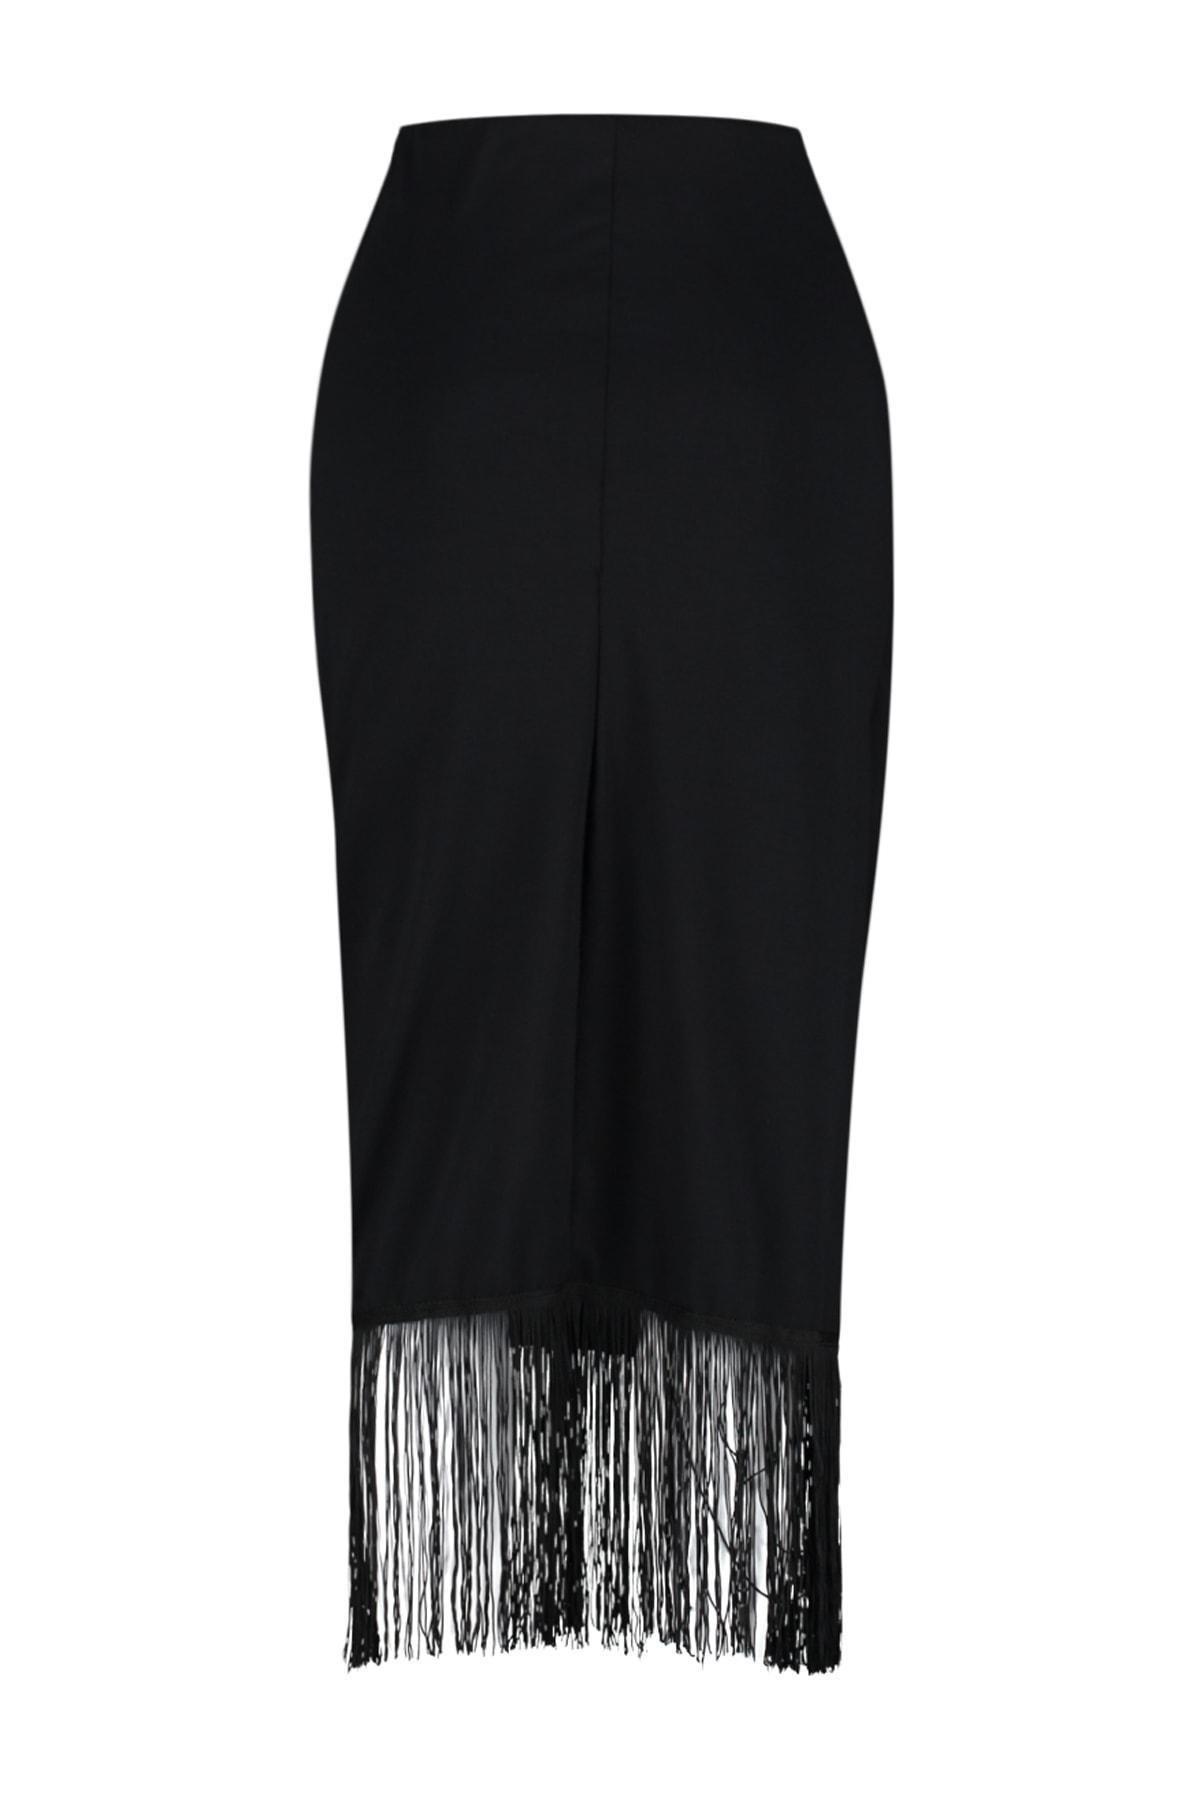 Trendyol - Black Fringes Detailed Maxi Skirt